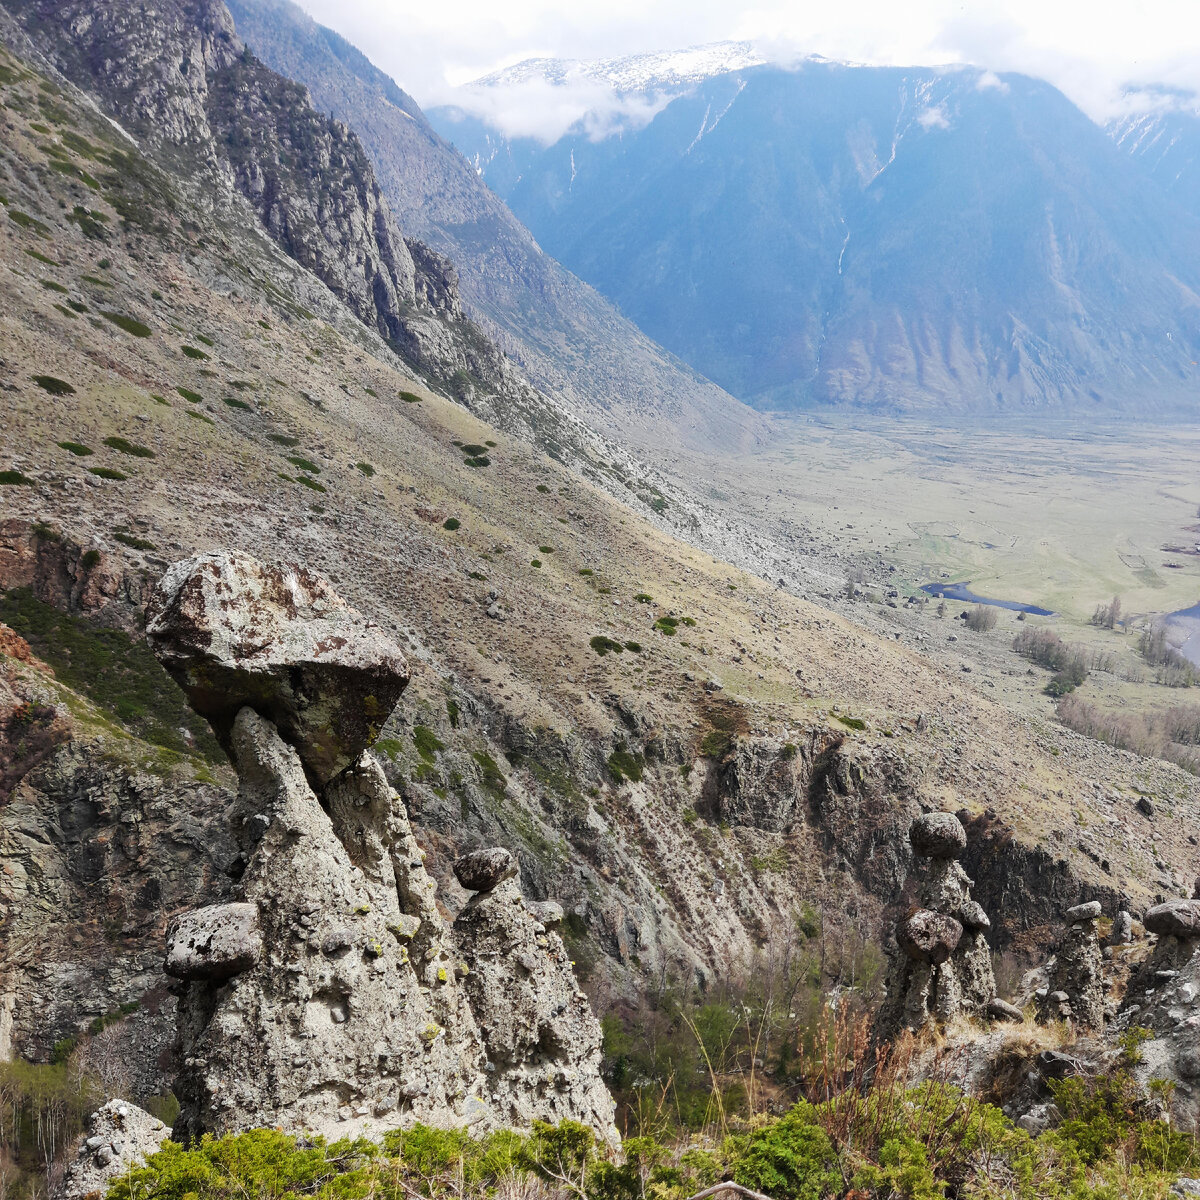 Урочище Аккурум с Каменными грибами - одно из чудес России, сотворённое самой природой, всего в 34 км от перевала Кату-Ярык.-5-7